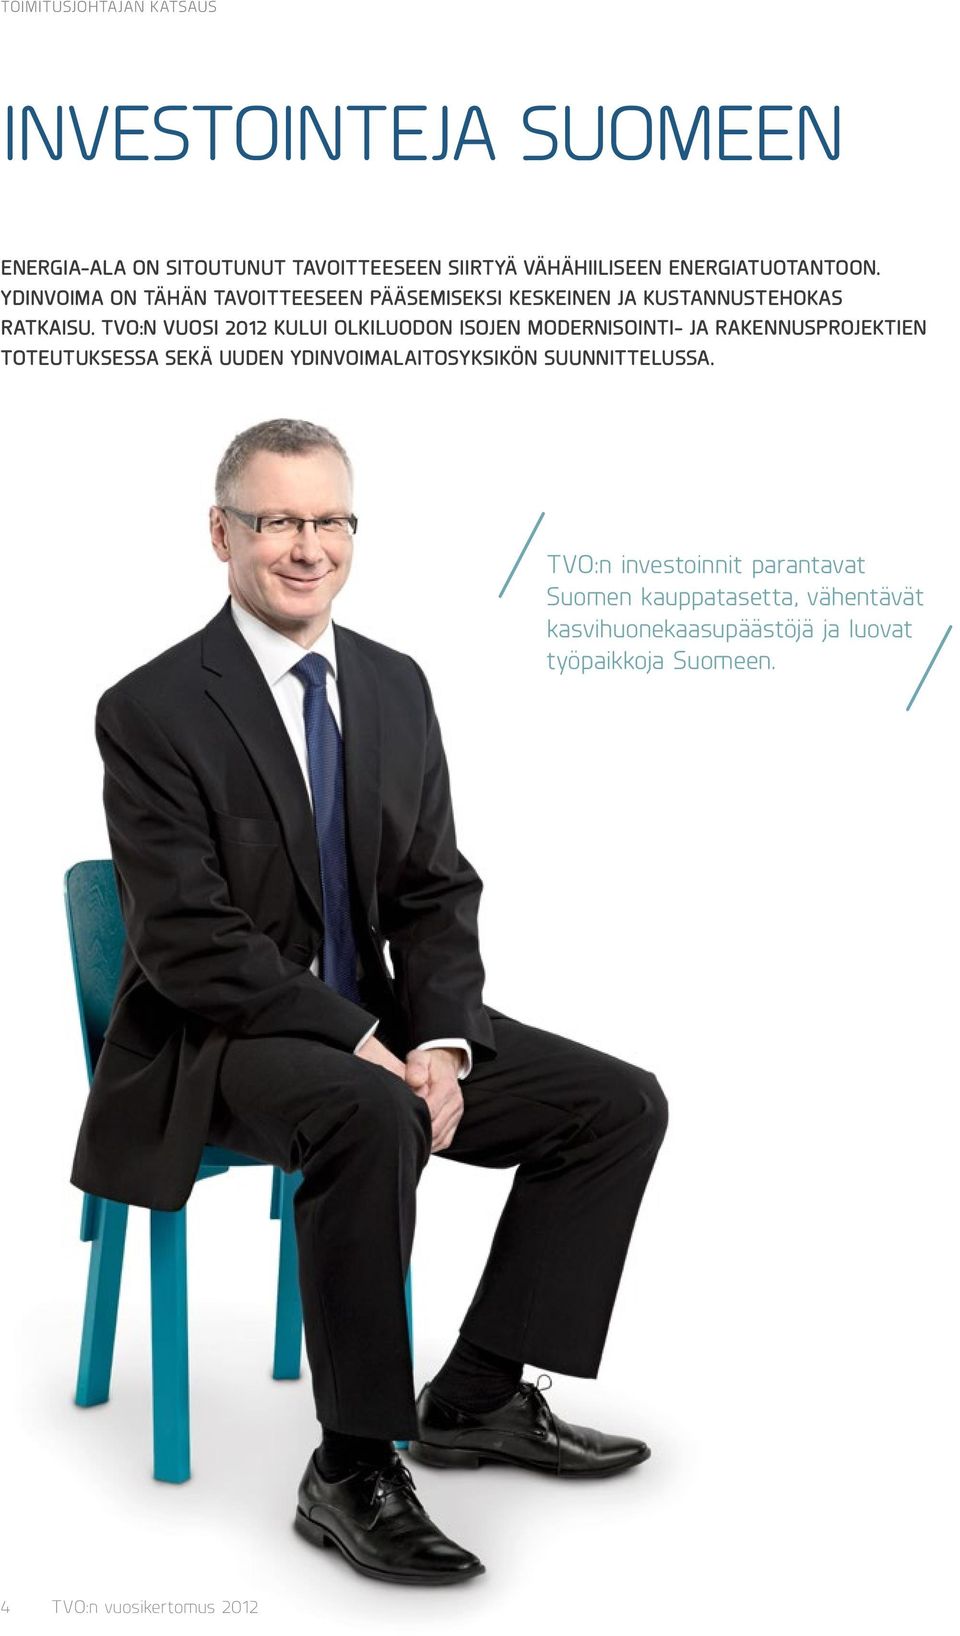 TVO:n vuosi 2012 kului Olkiluodon isojen modernisointi- ja rakennusprojektien toteutuksessa sekä uuden ydinvoimalaitosyksikön